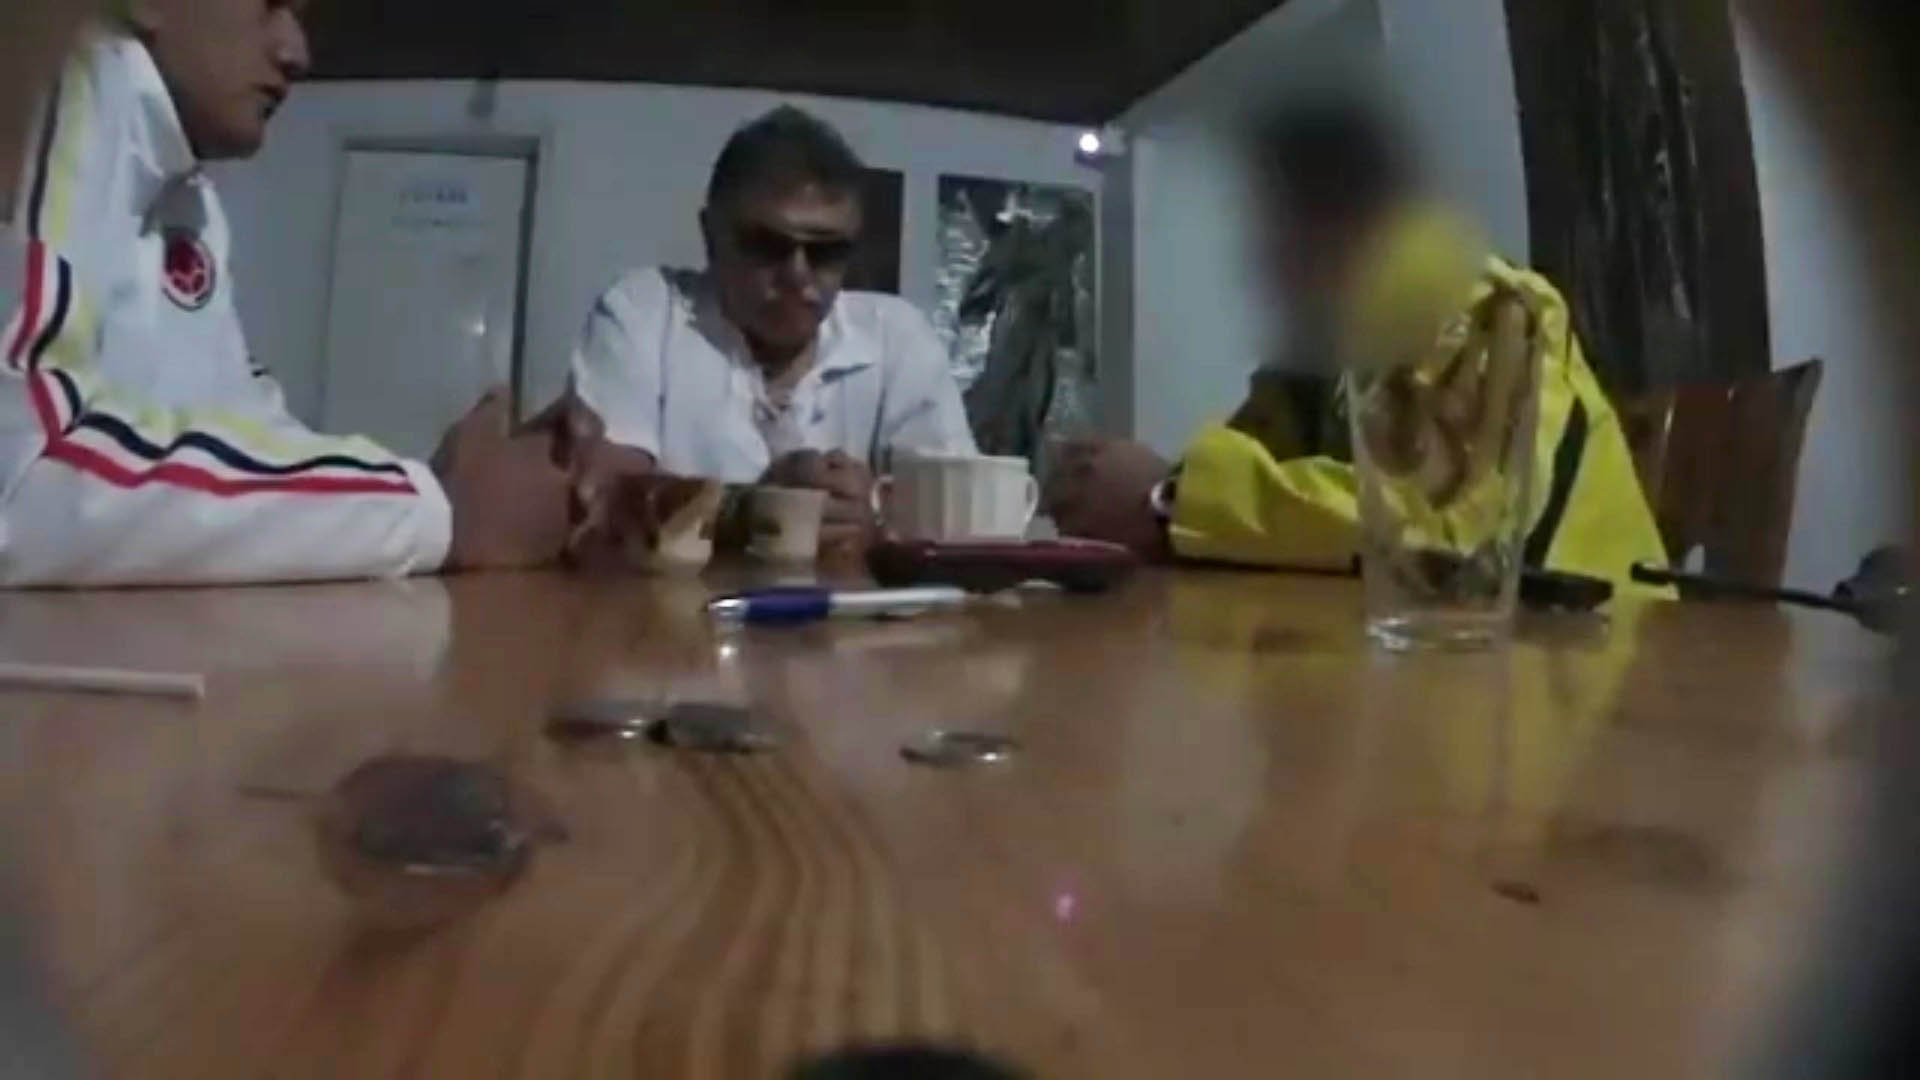 Captura del video publicado por la Fiscalía sobre la reunión en la que "Santrich" estaría negociando el envío de la cocaína a Estados Unidos